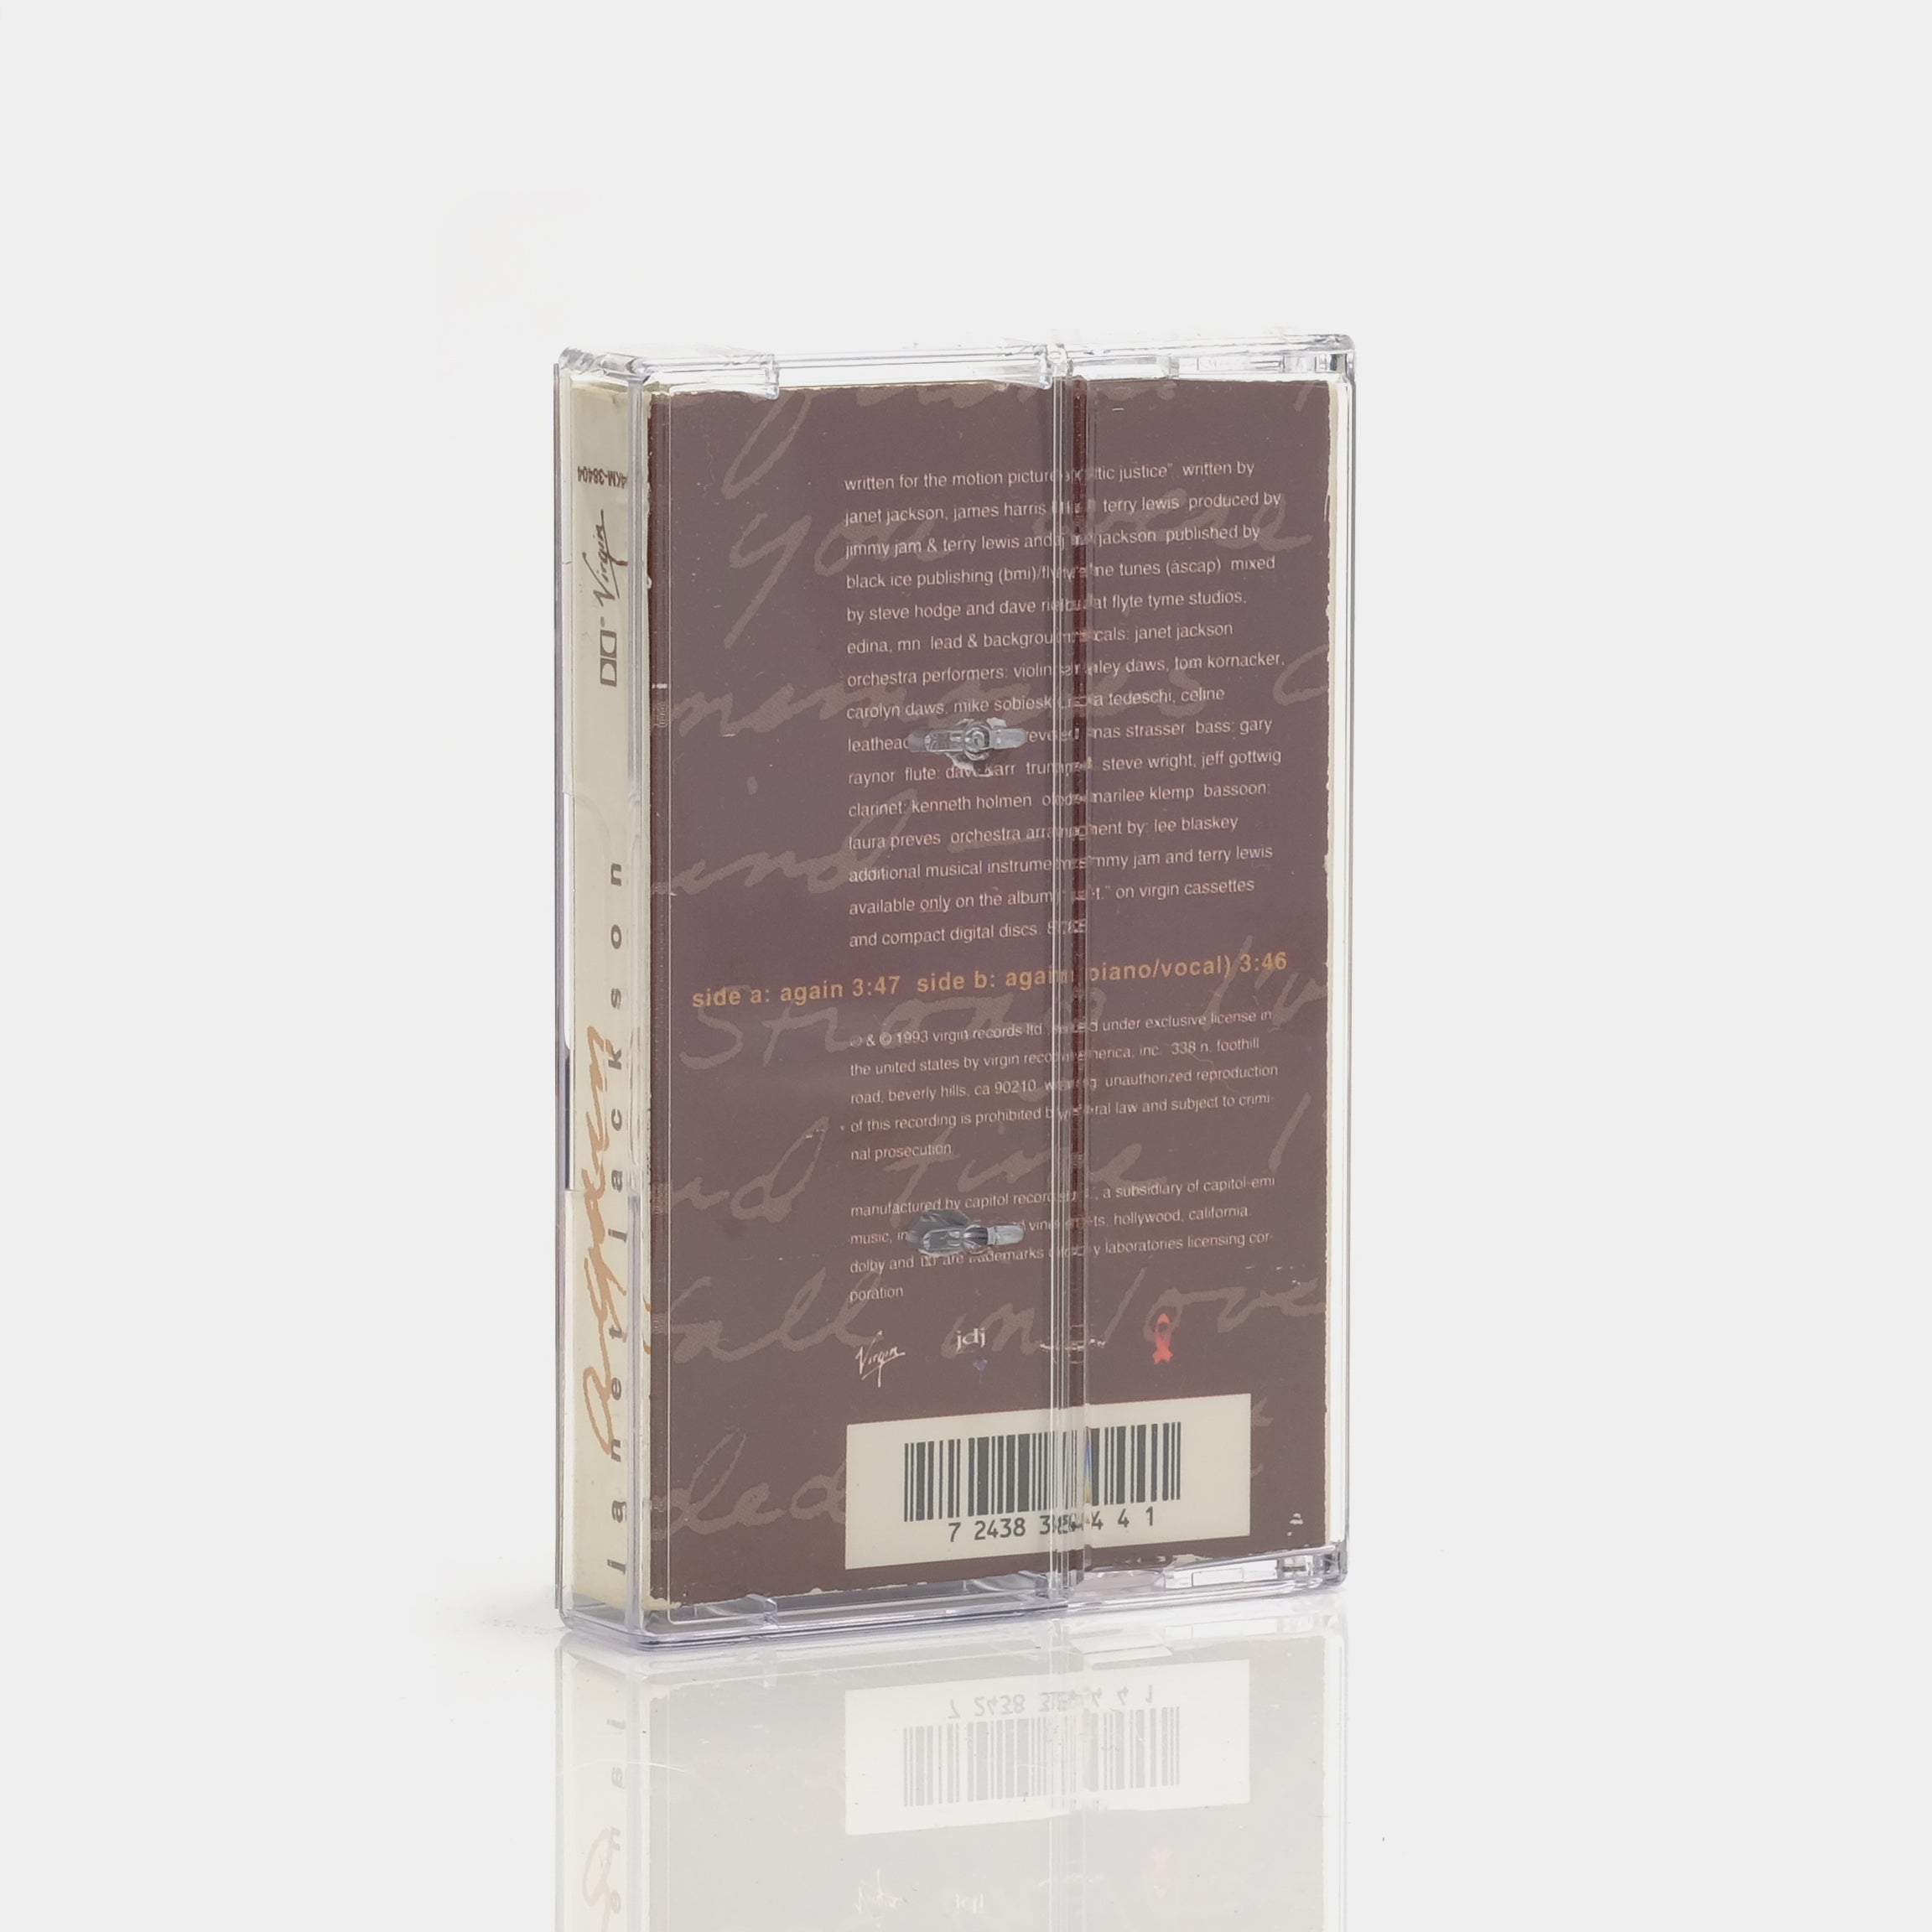 Janet Jackson - Again Cassette Tape Single